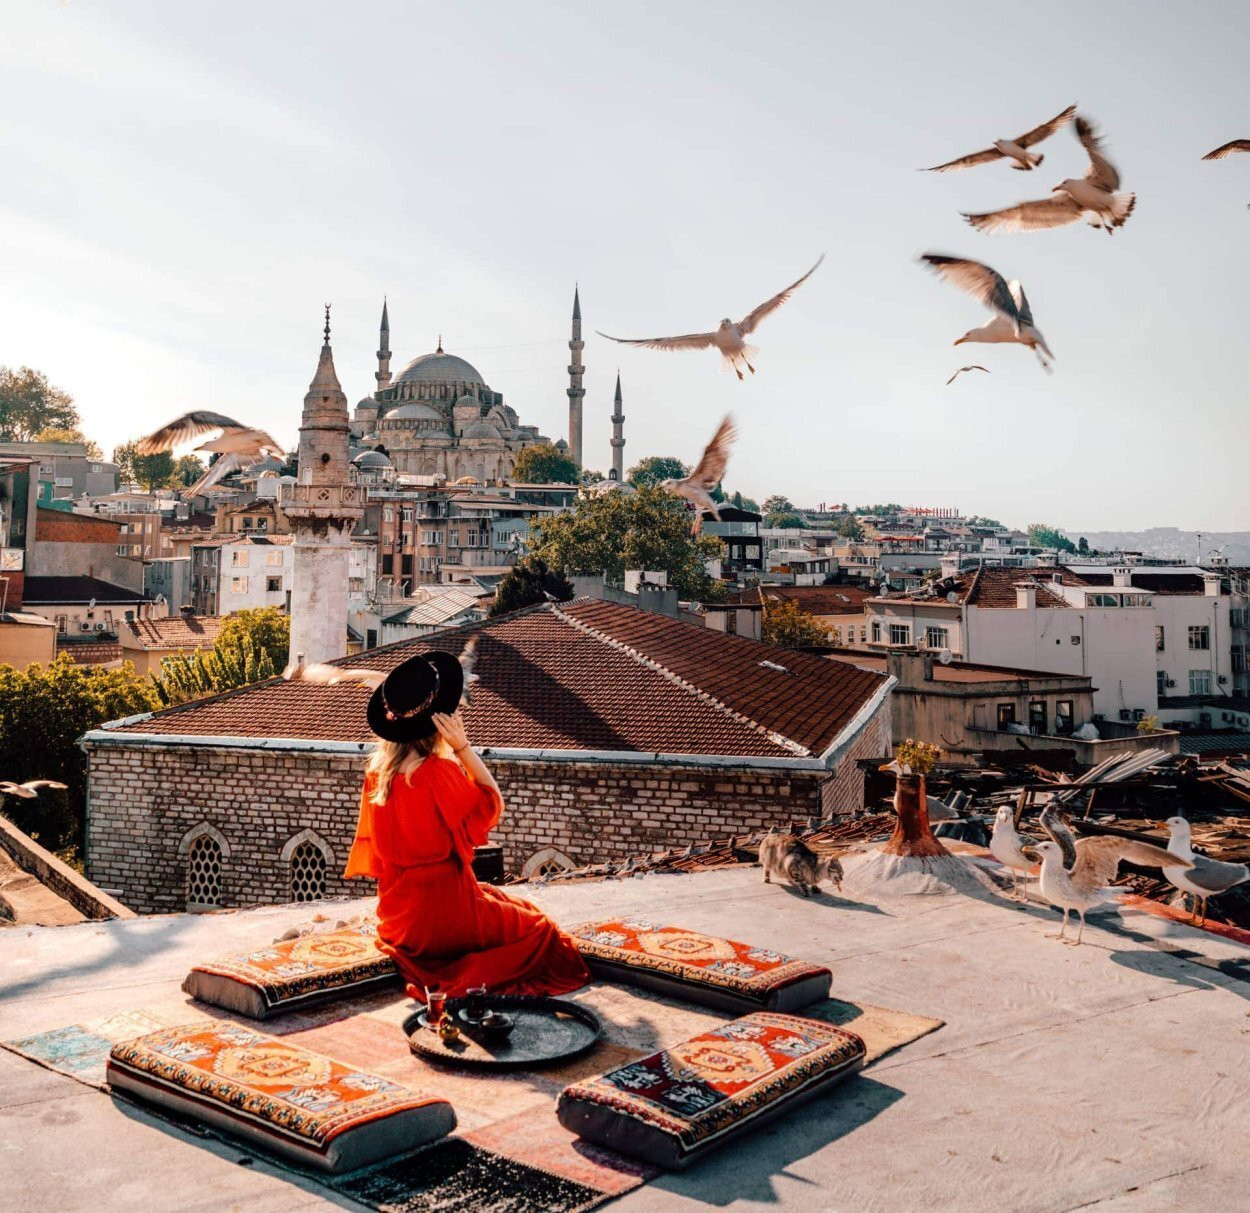 Khám phá Istanbul là hành trình du hành thời gian, đắm chìm trong văn hóa, kiến trúc và ẩm thực độc đáo - Ảnh: saltinourhair